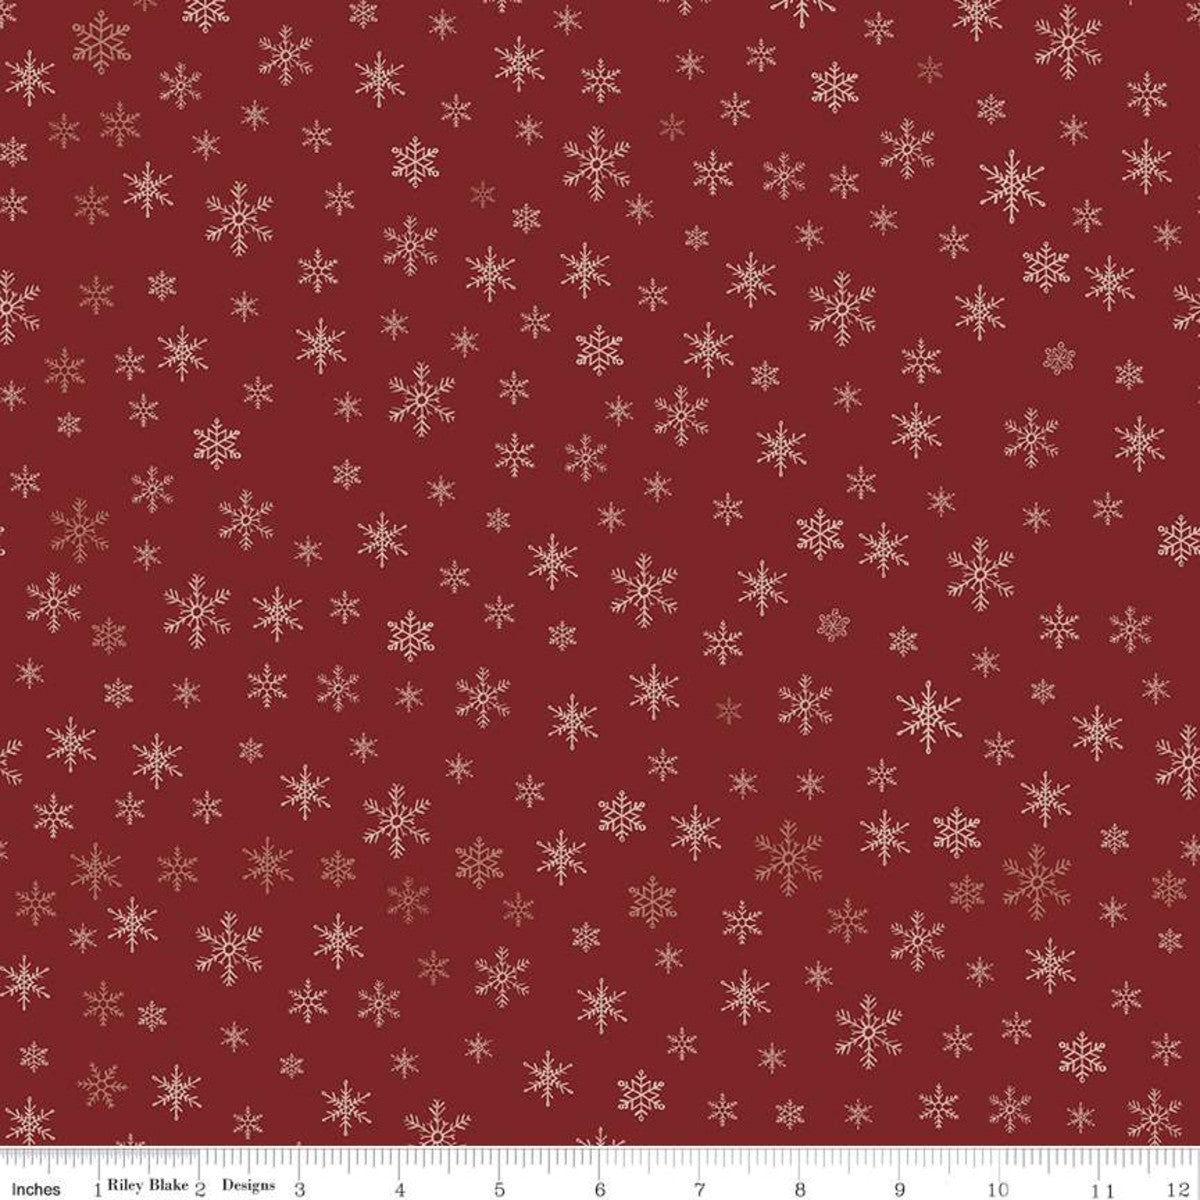 Farmhouse Christmas Snowflakes Red